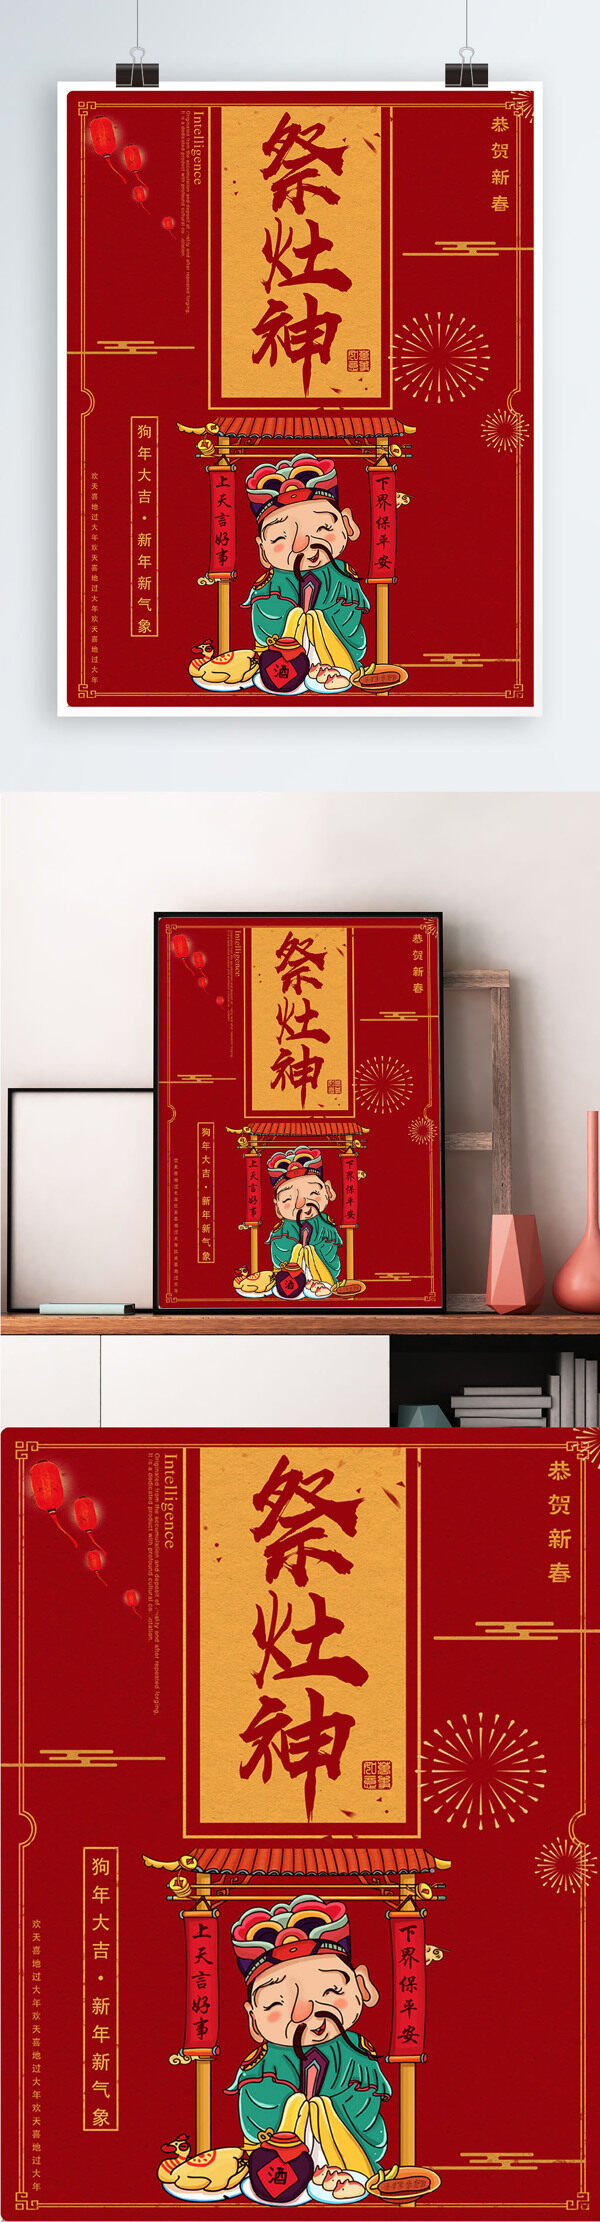 红色背景简约大气中国风祭灶神宣传海报